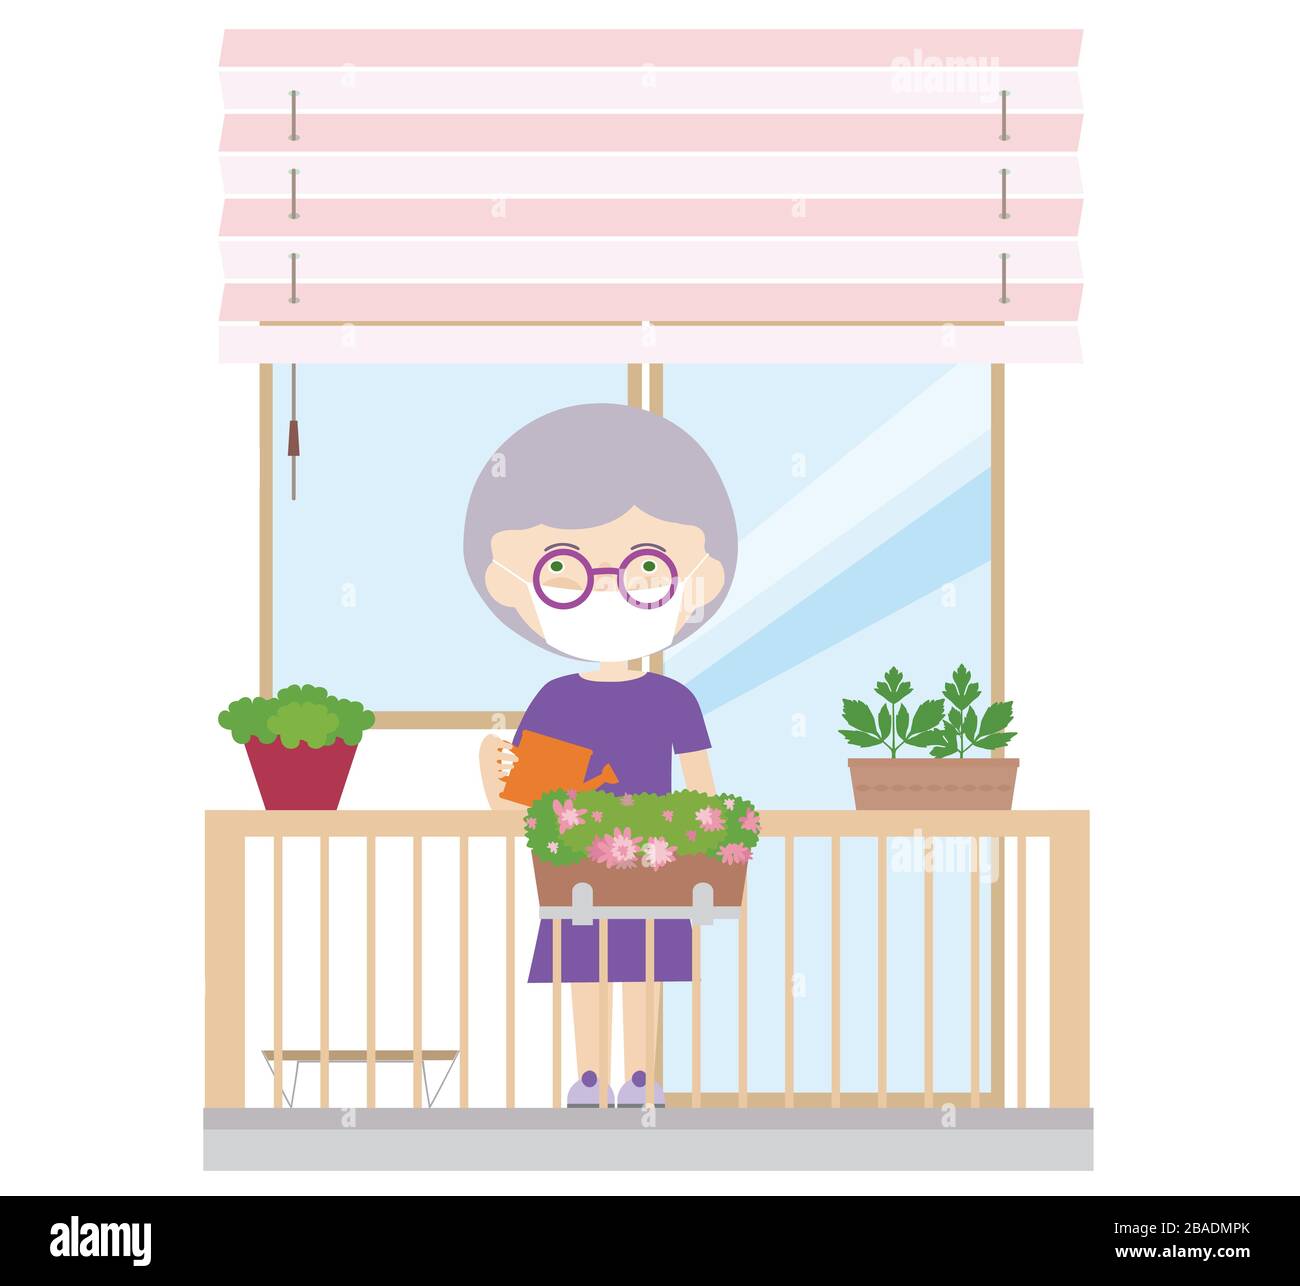 Illustration einer Rentnerin oder Seniorin auf einem Balkon mit einer Schutzmaske oder einem Schleier auf dem Gesicht. Kultivierte und wässerte Blumen und Kräuter - Vecto Stock Vektor